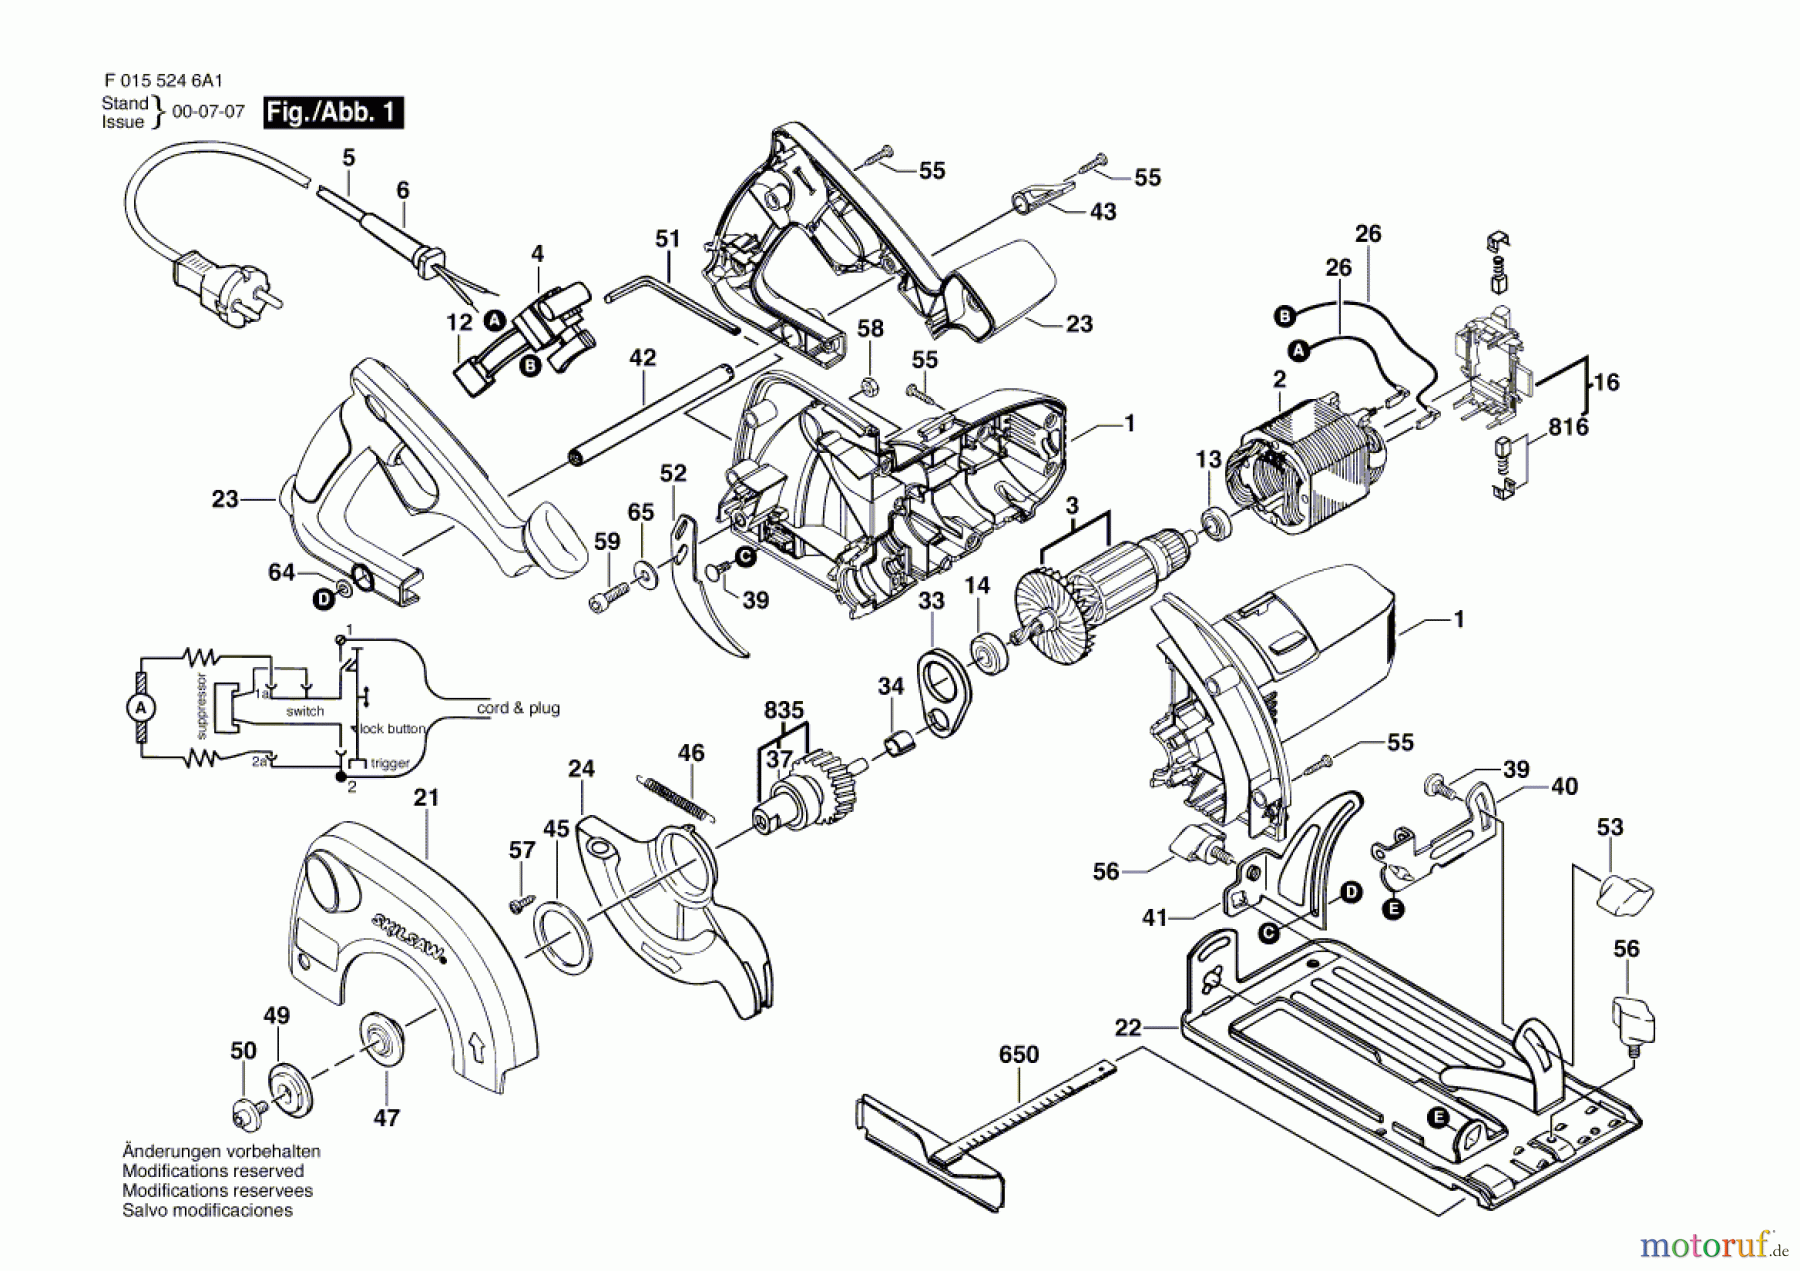  Bosch Werkzeug Handkreissäge 5246 Seite 1